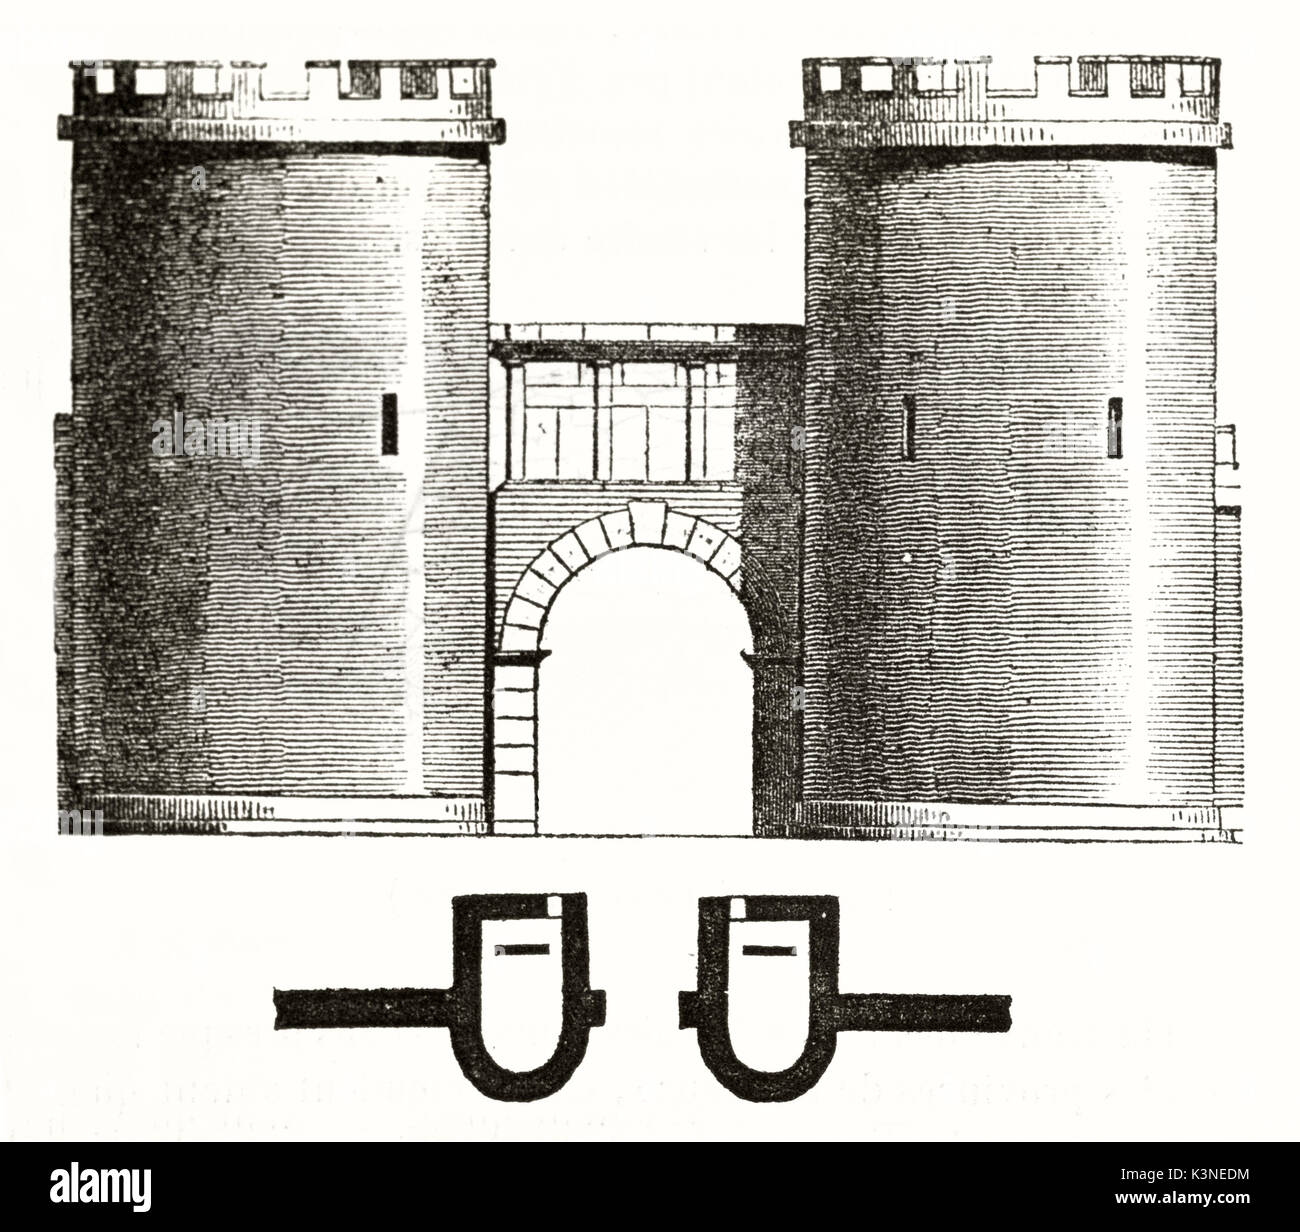 Alte Ansicht von vorne auf die Porte de France (Frankreich Tor) Nimes Frankreich, in einem alten architektonischen Abbildung angezeigt. Von unbekannter Autor auf Magasin Pittoresque Paris 1839 veröffentlicht. Stockfoto